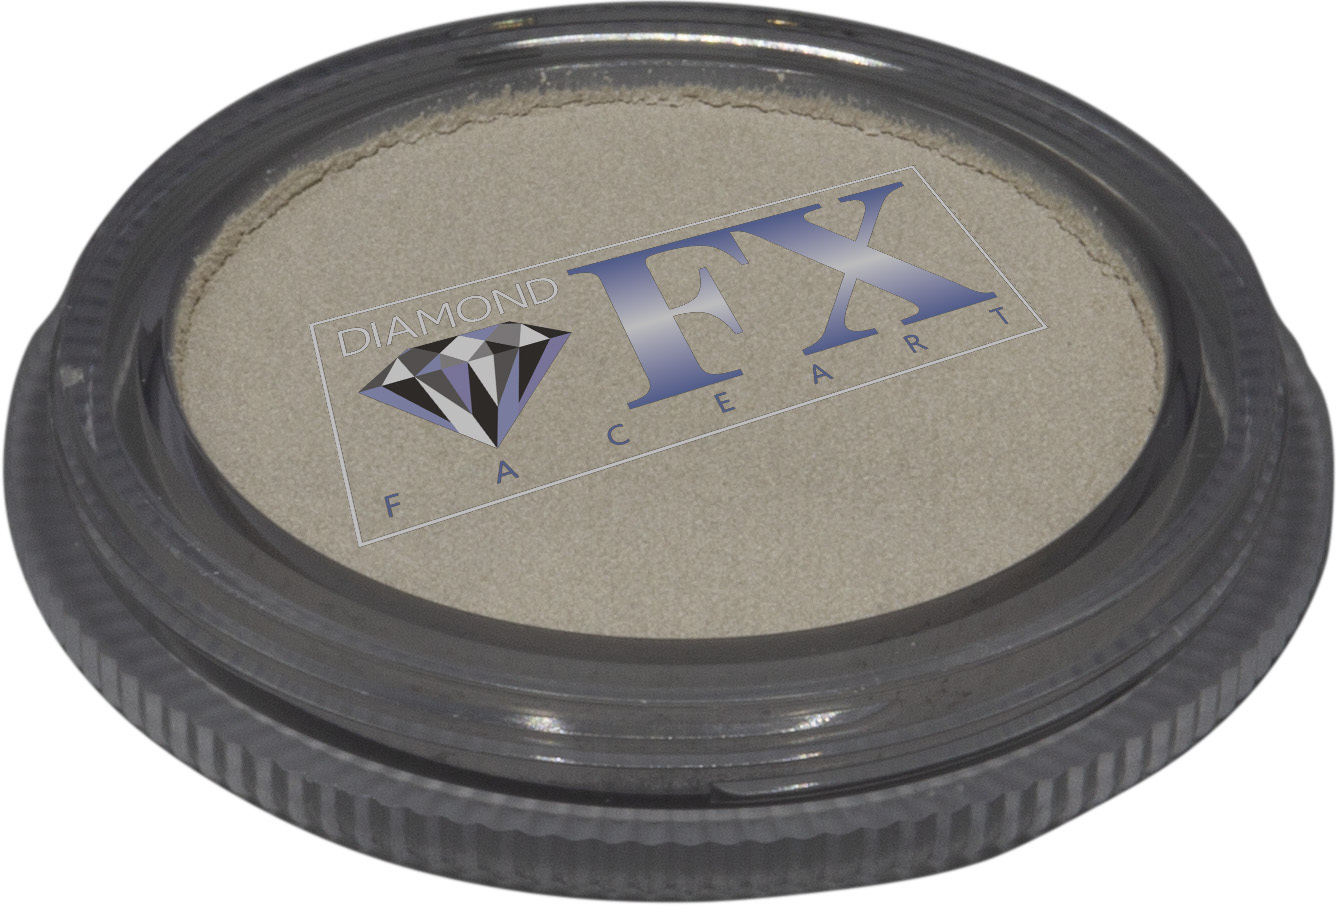 Diamond FX White Metallic 30g - Small Image